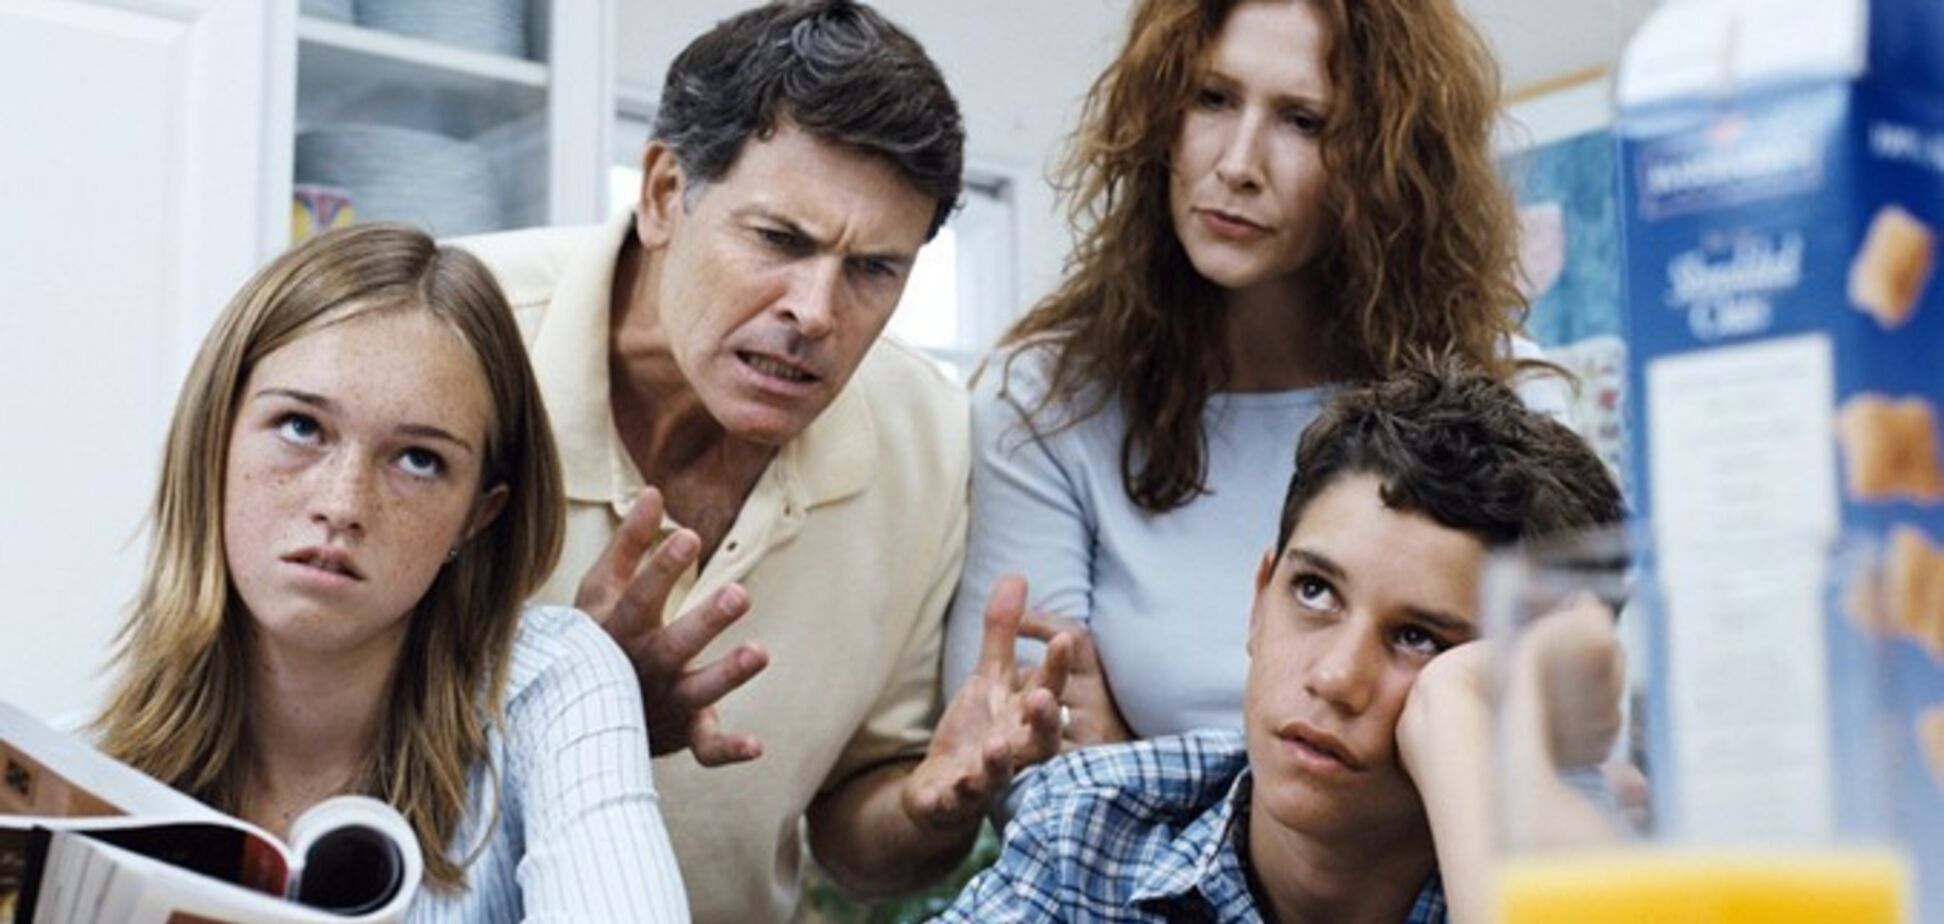 ТОП ошибок родителей при общении с подростками